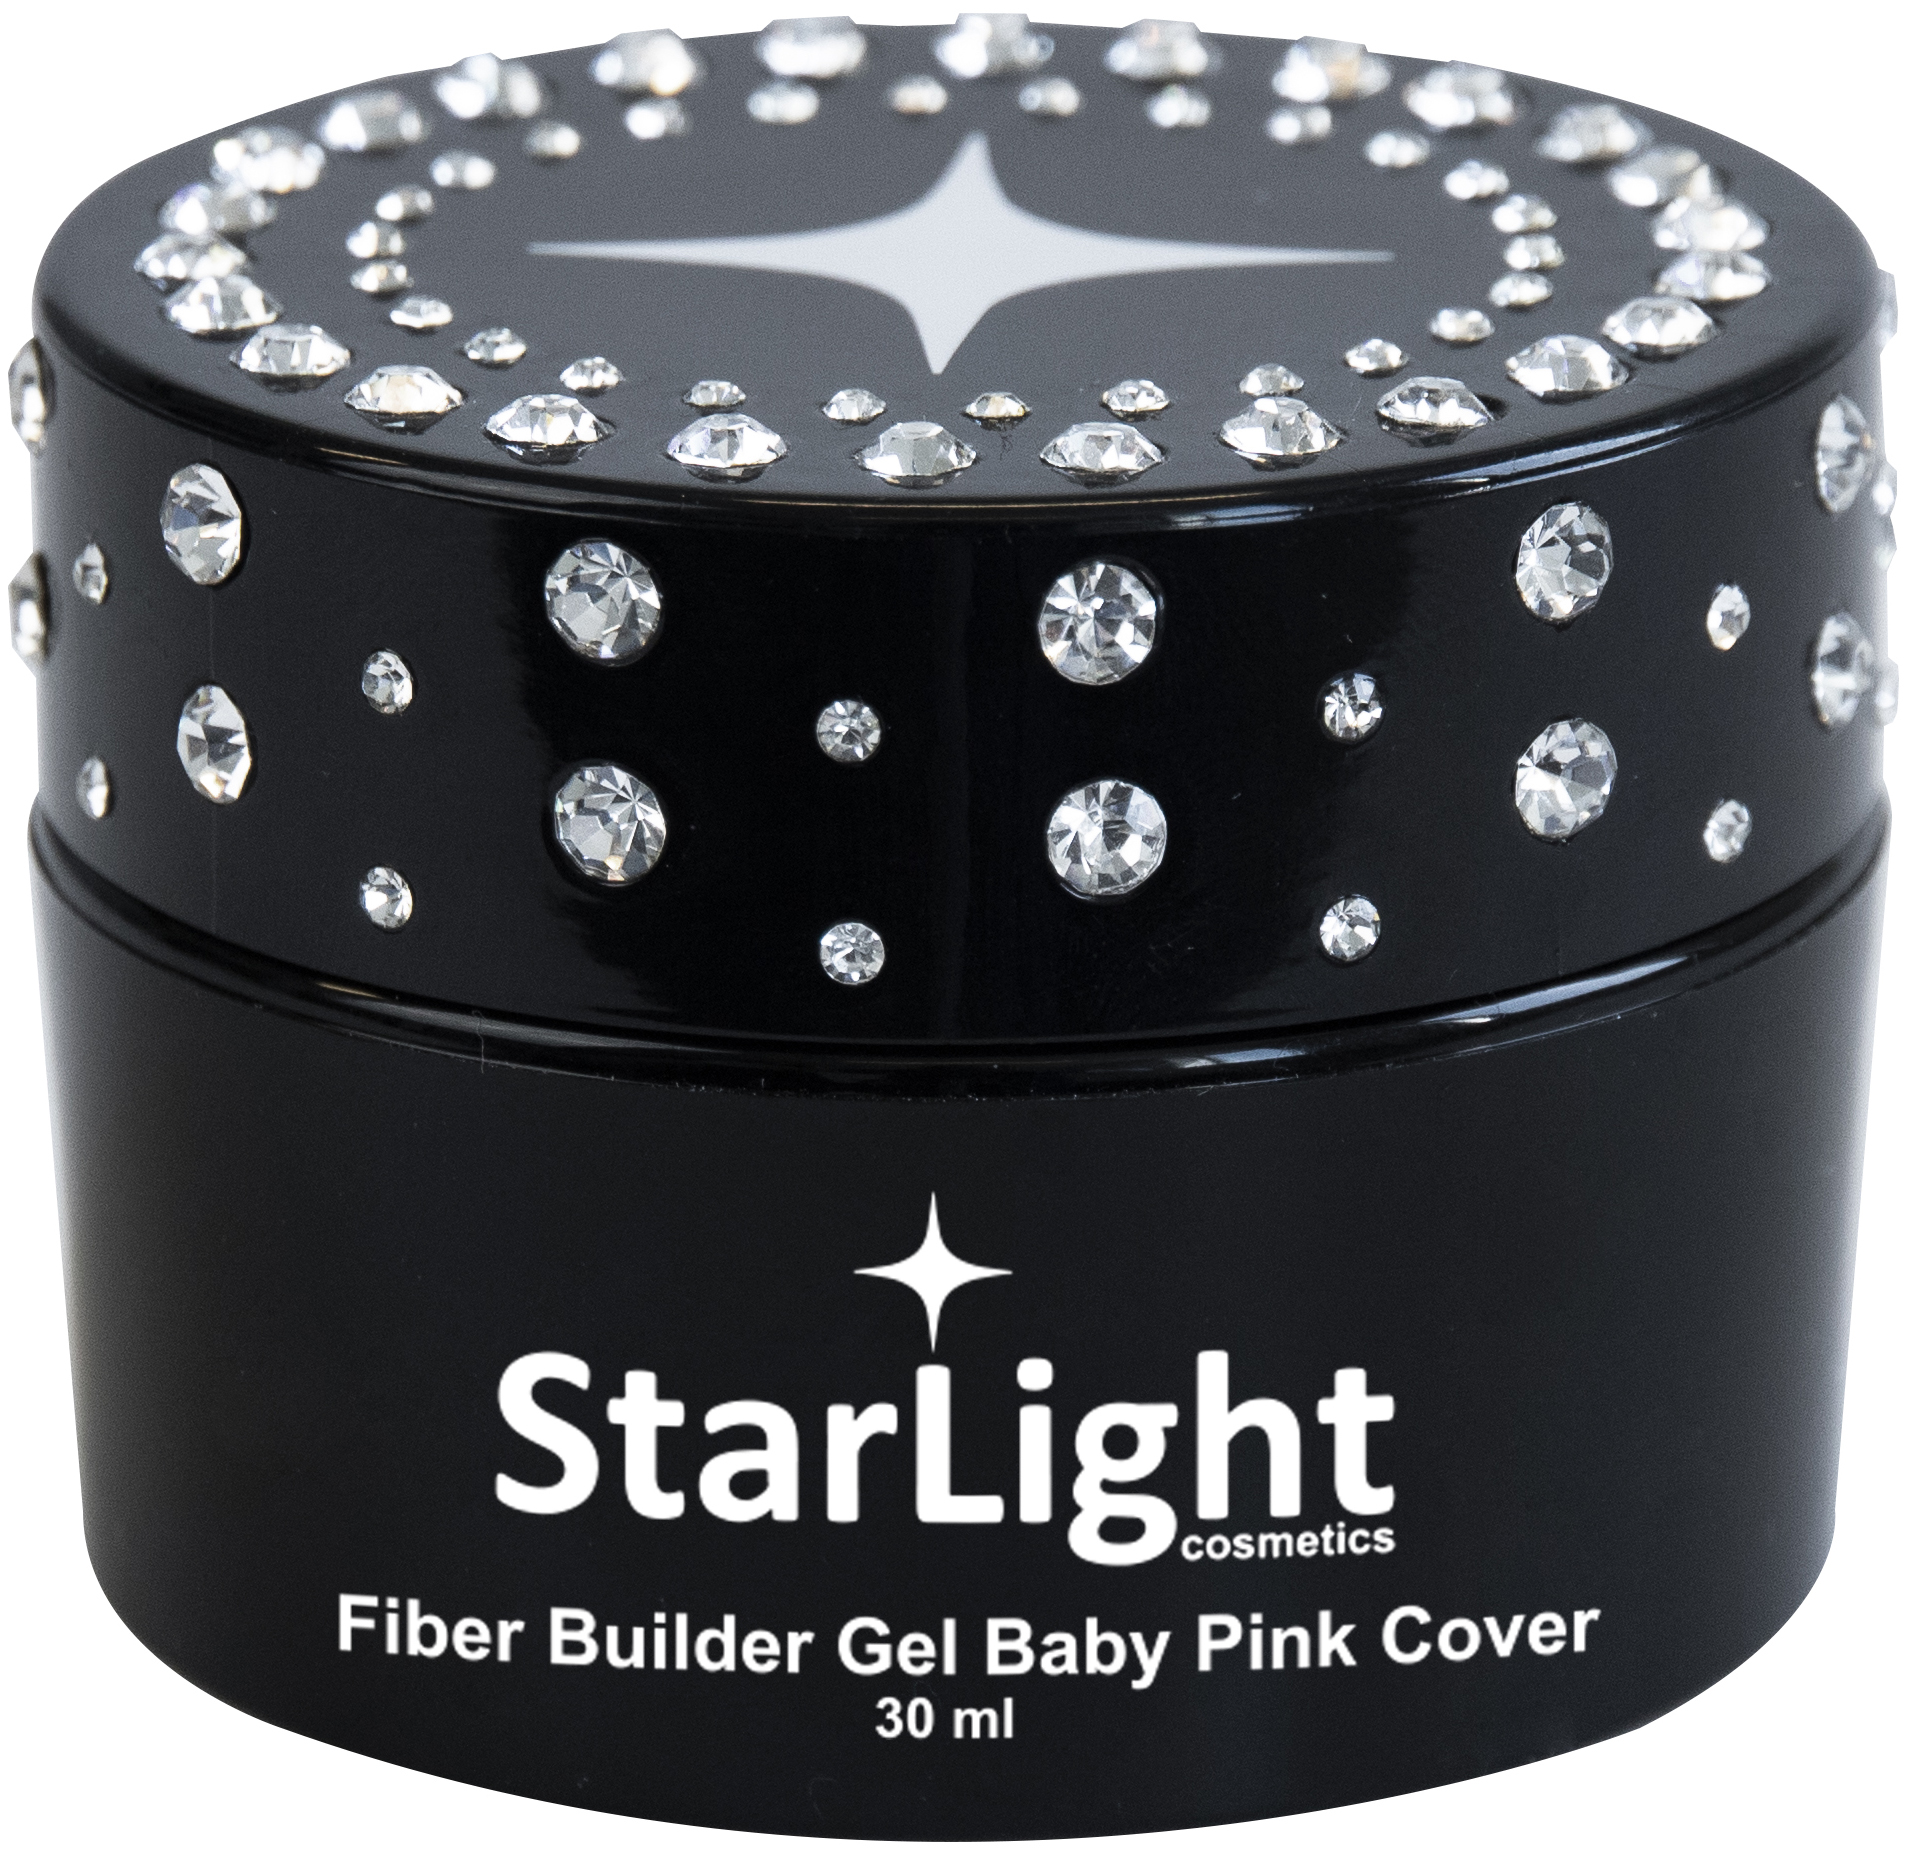 Naglar Fiber Builder Gel Baby Pink Cover - 30 ml